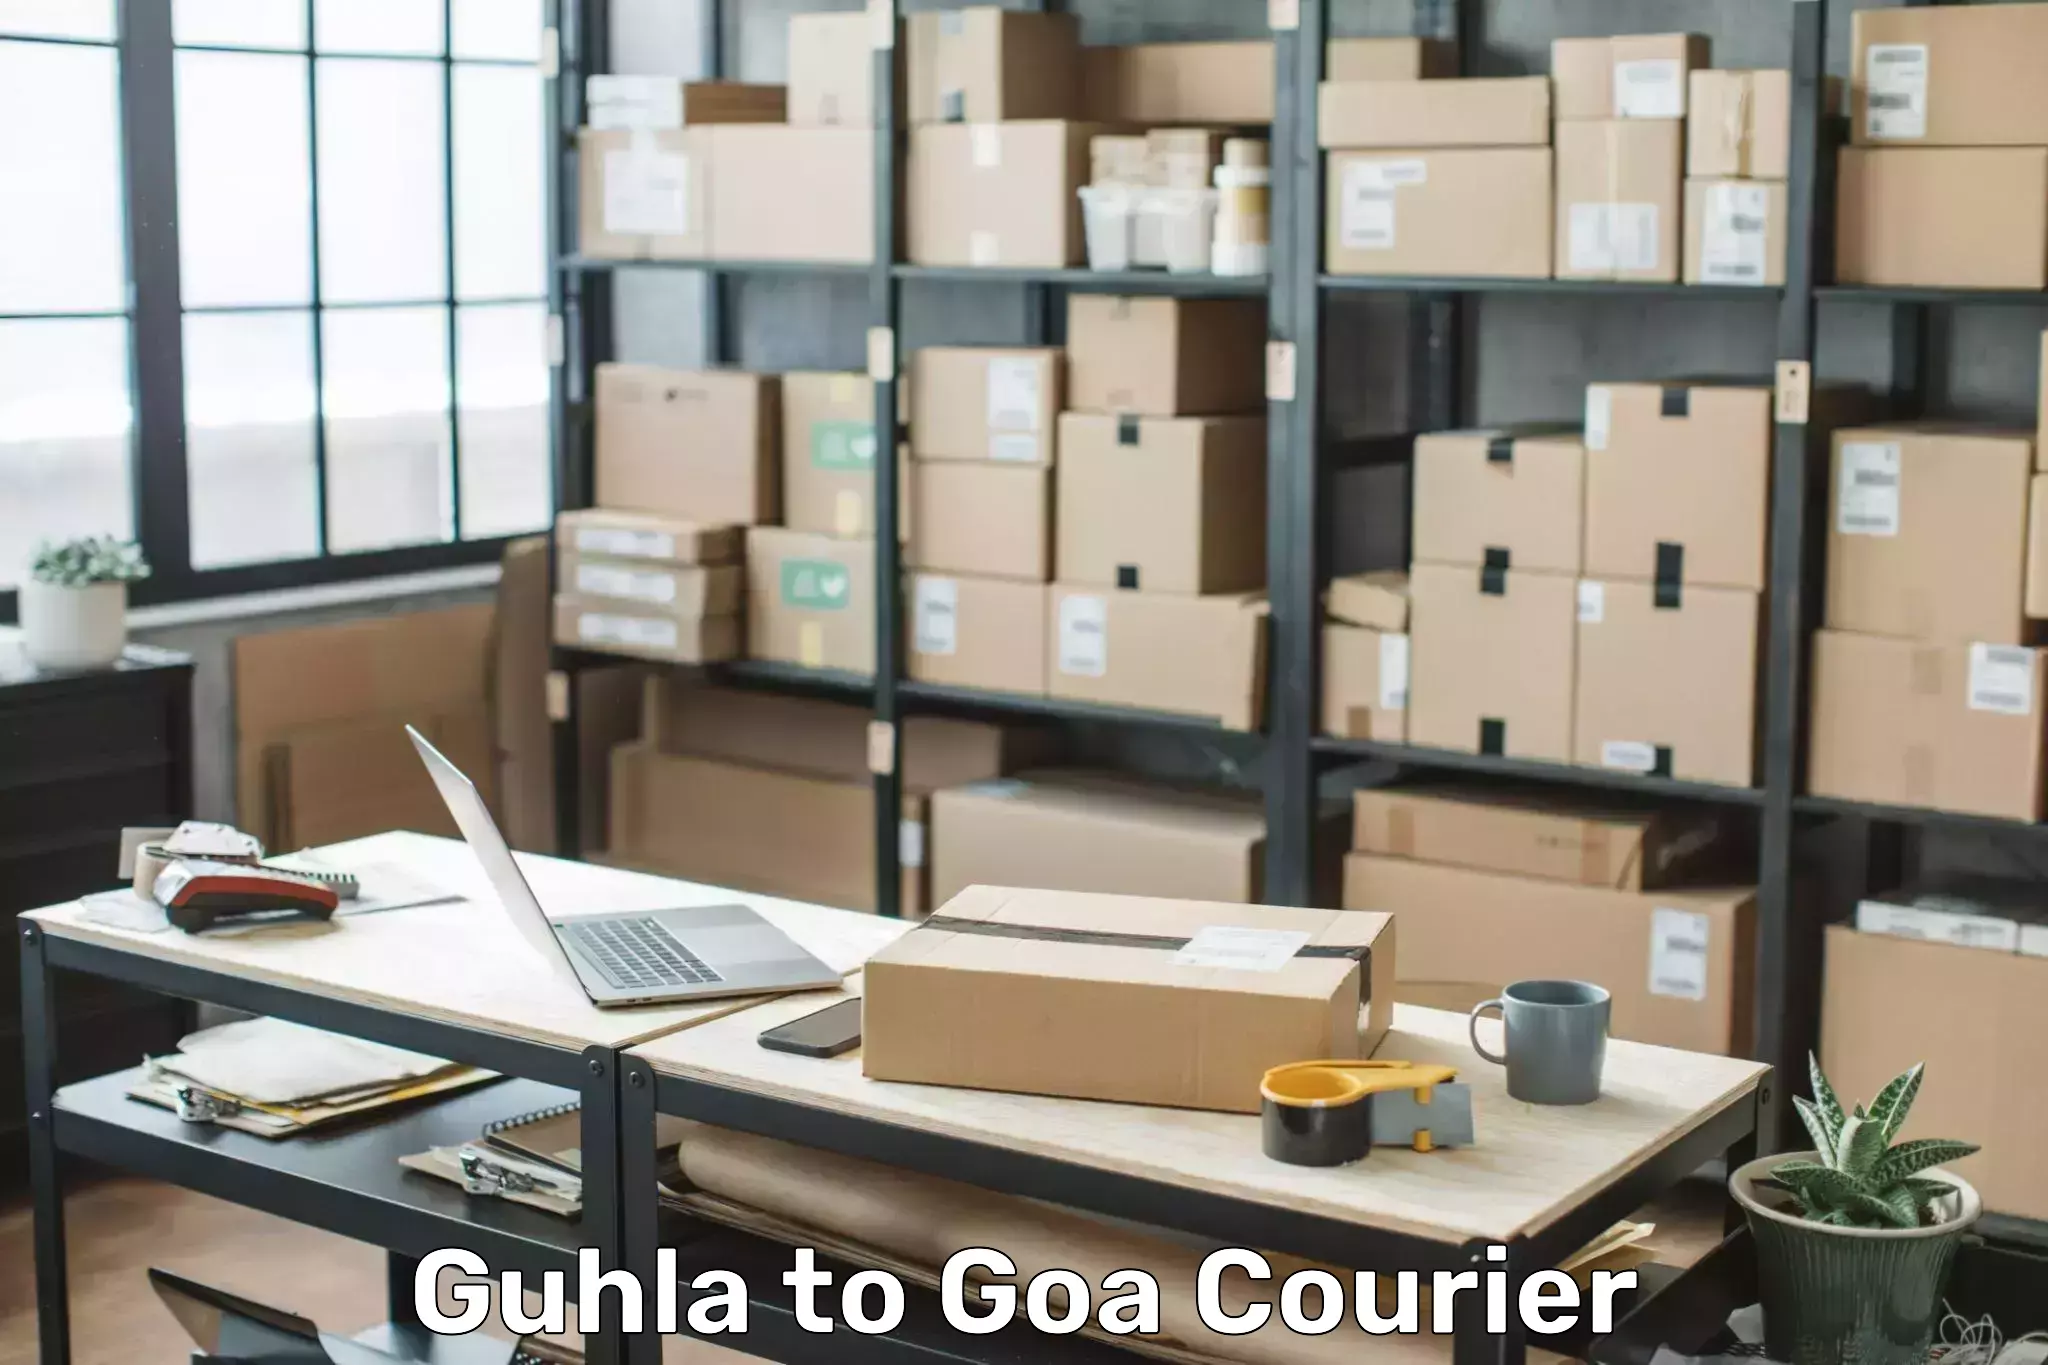 Luggage transit service Guhla to Goa